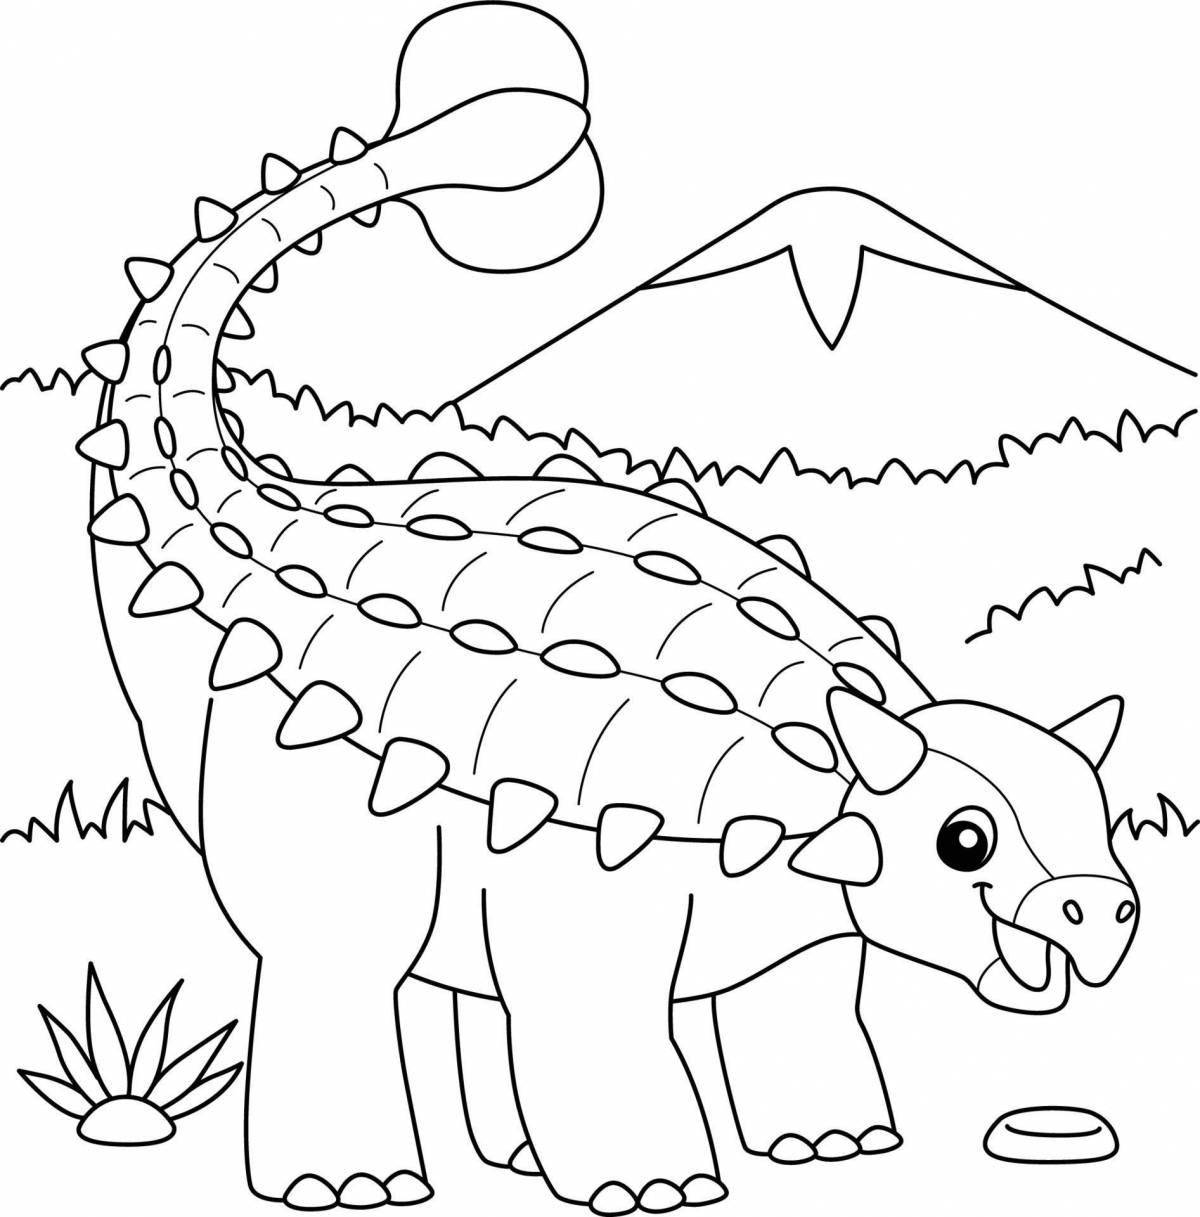 Яркая раскраска анкилозавр для детей